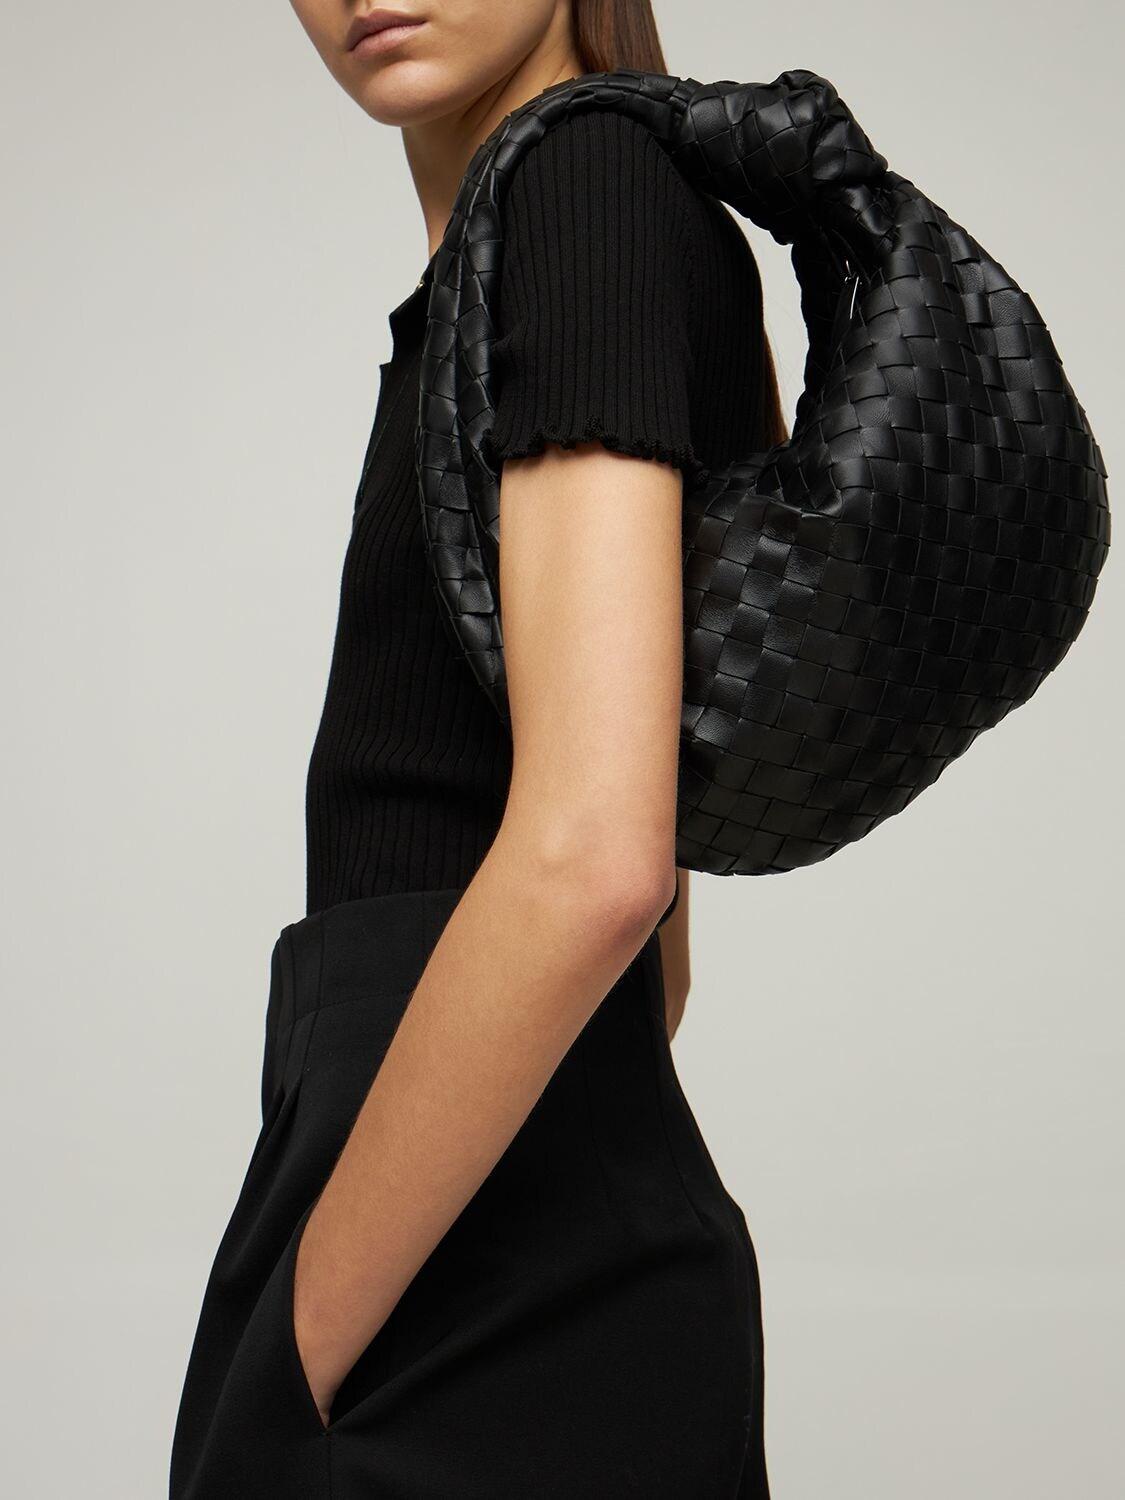 Bottega Veneta Teen Jodie Leather Bag in Black | Lyst